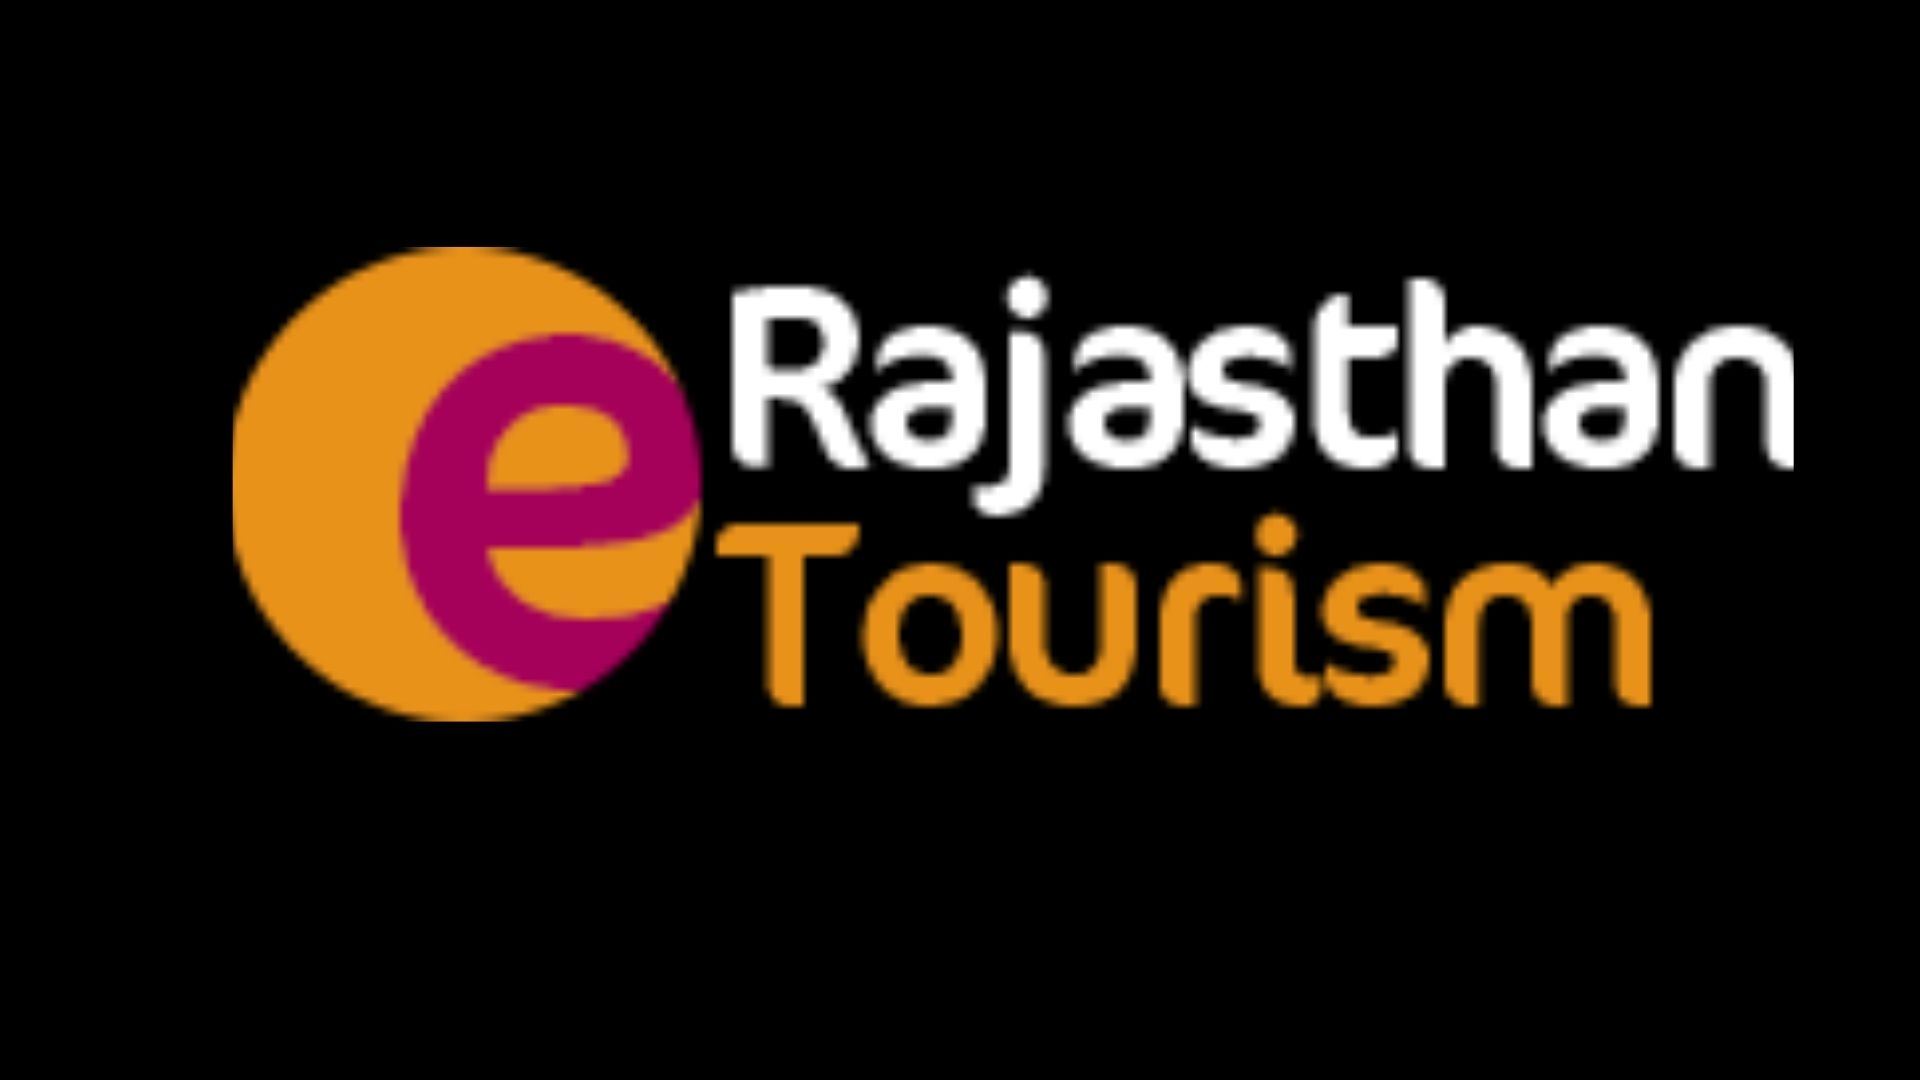 Erajasthan Tourism